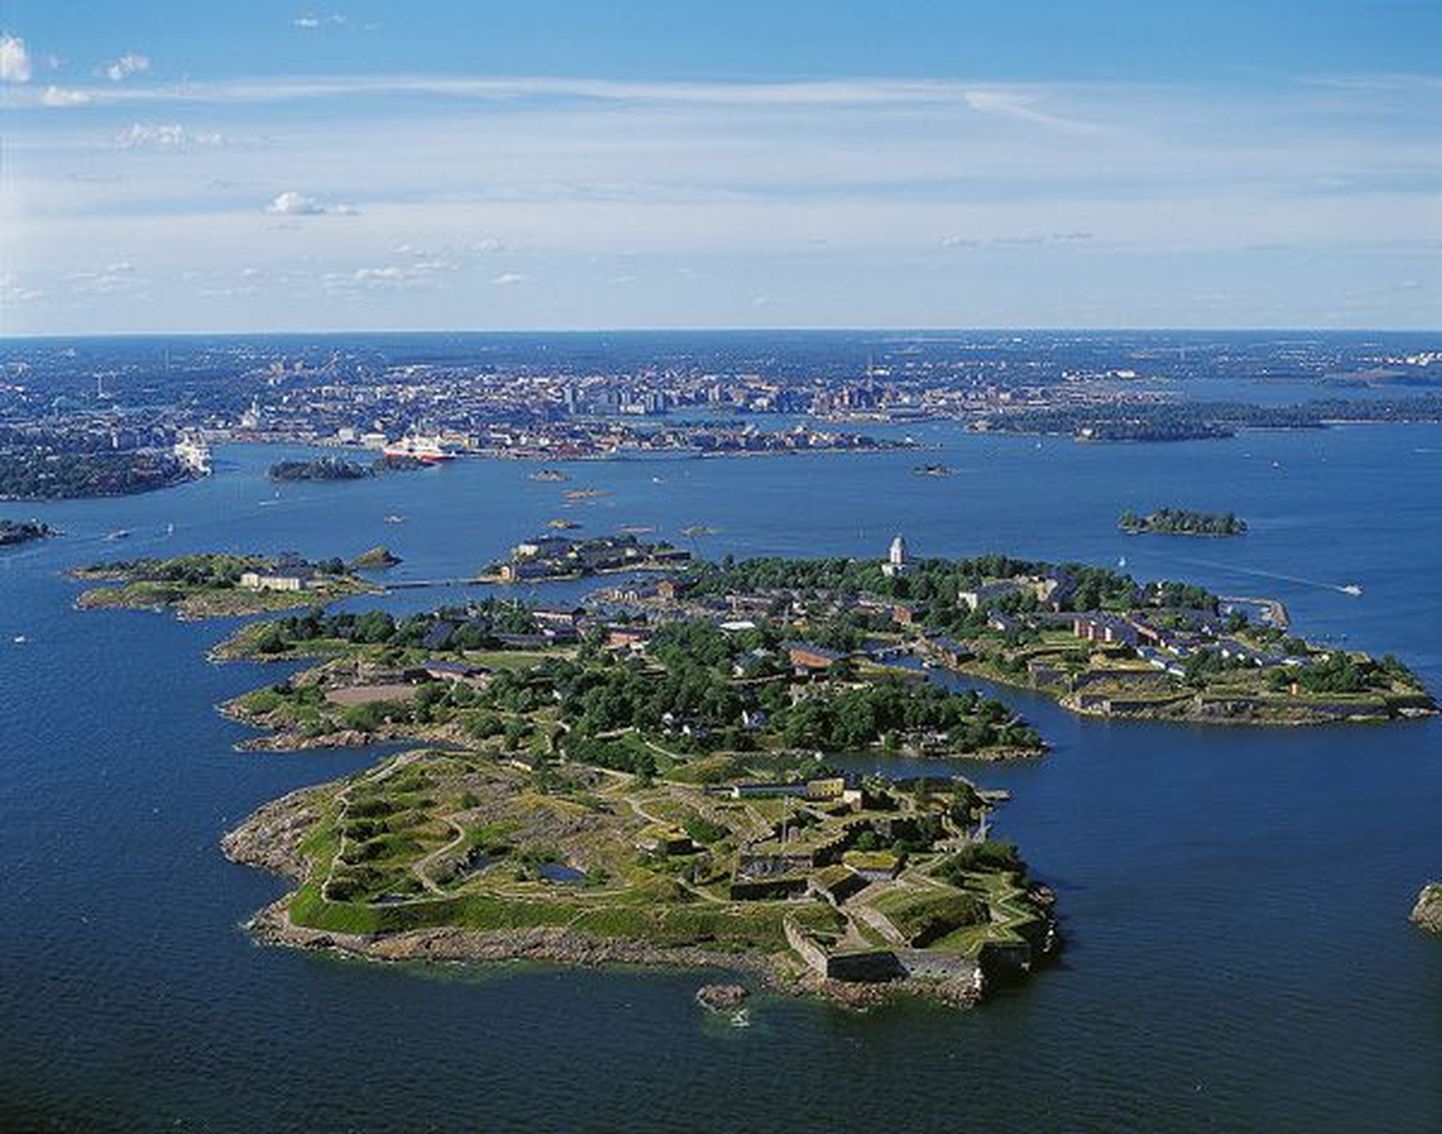 Soome veeteede ameti foto Suomenlinna merekindlusest Helsingi lõunaküljel..